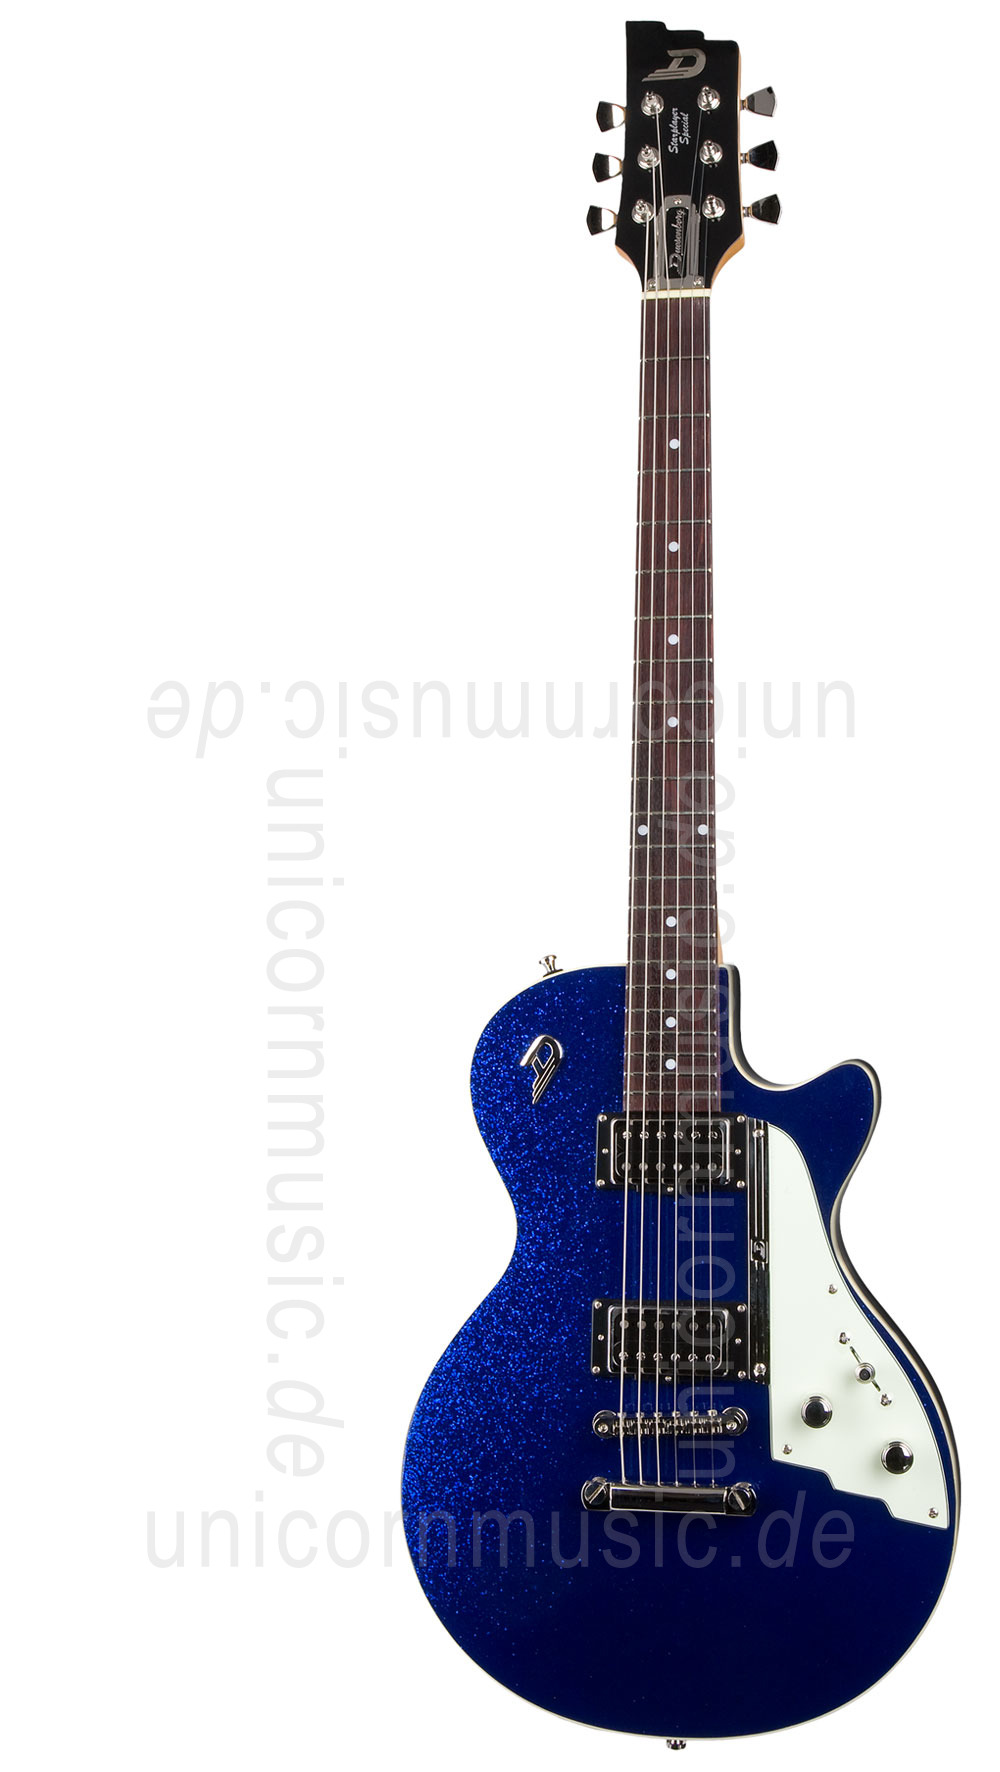 zur Artikelbeschreibung / Preis E-Gitarre DUESENBERG STARPLAYER SPECIAL - Blue Sparkle